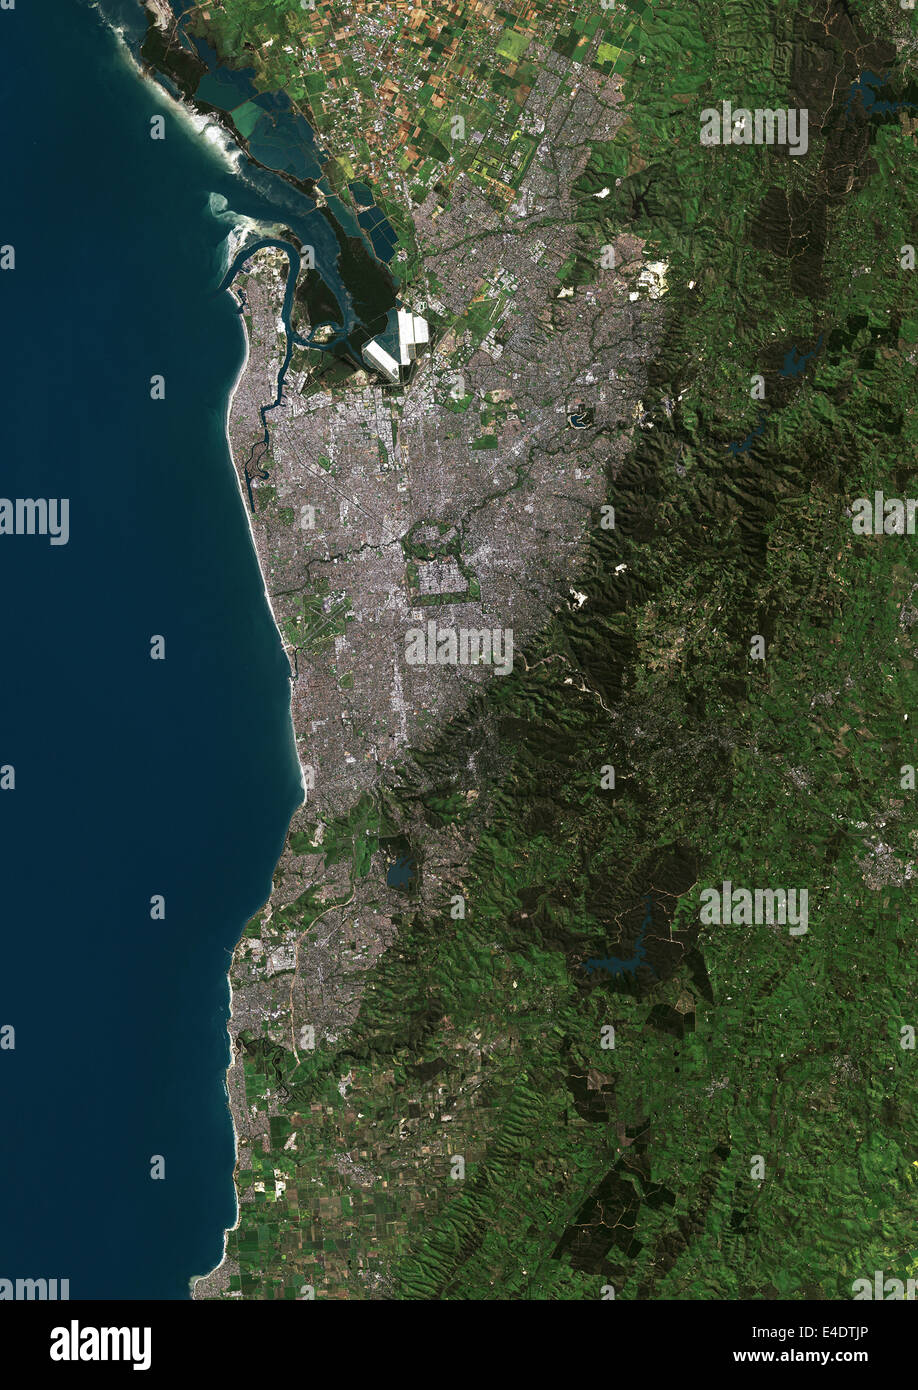 Adelaide, Australie, True Color Image satellite. Adélaïde, Australie. La couleur vraie image satellite d'Adélaïde, la capitale Banque D'Images